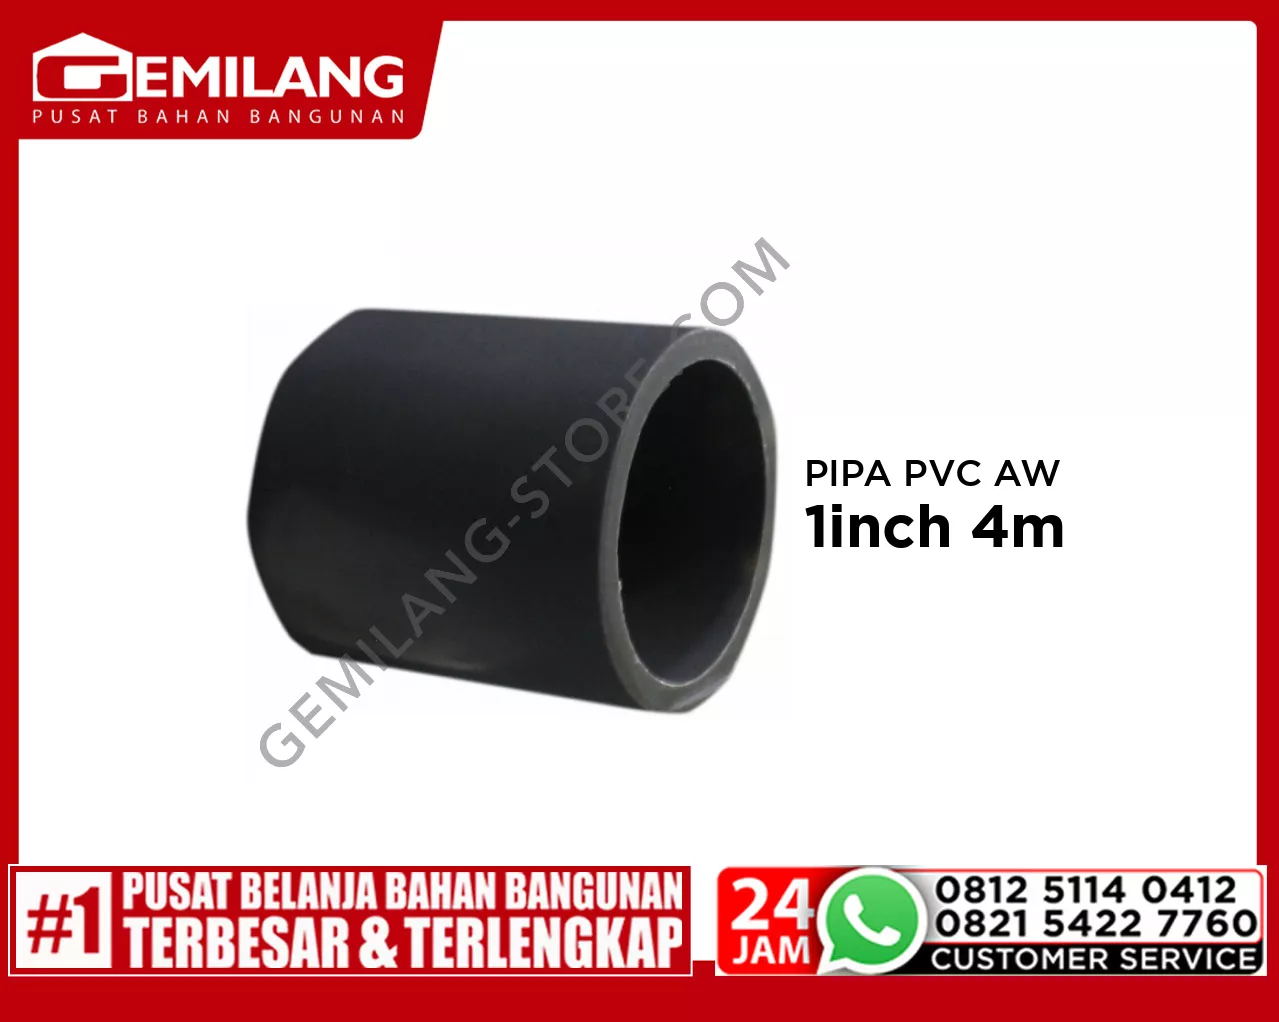 LANGGENG PIPA PVC AW ABU-ABU 1inch 4m